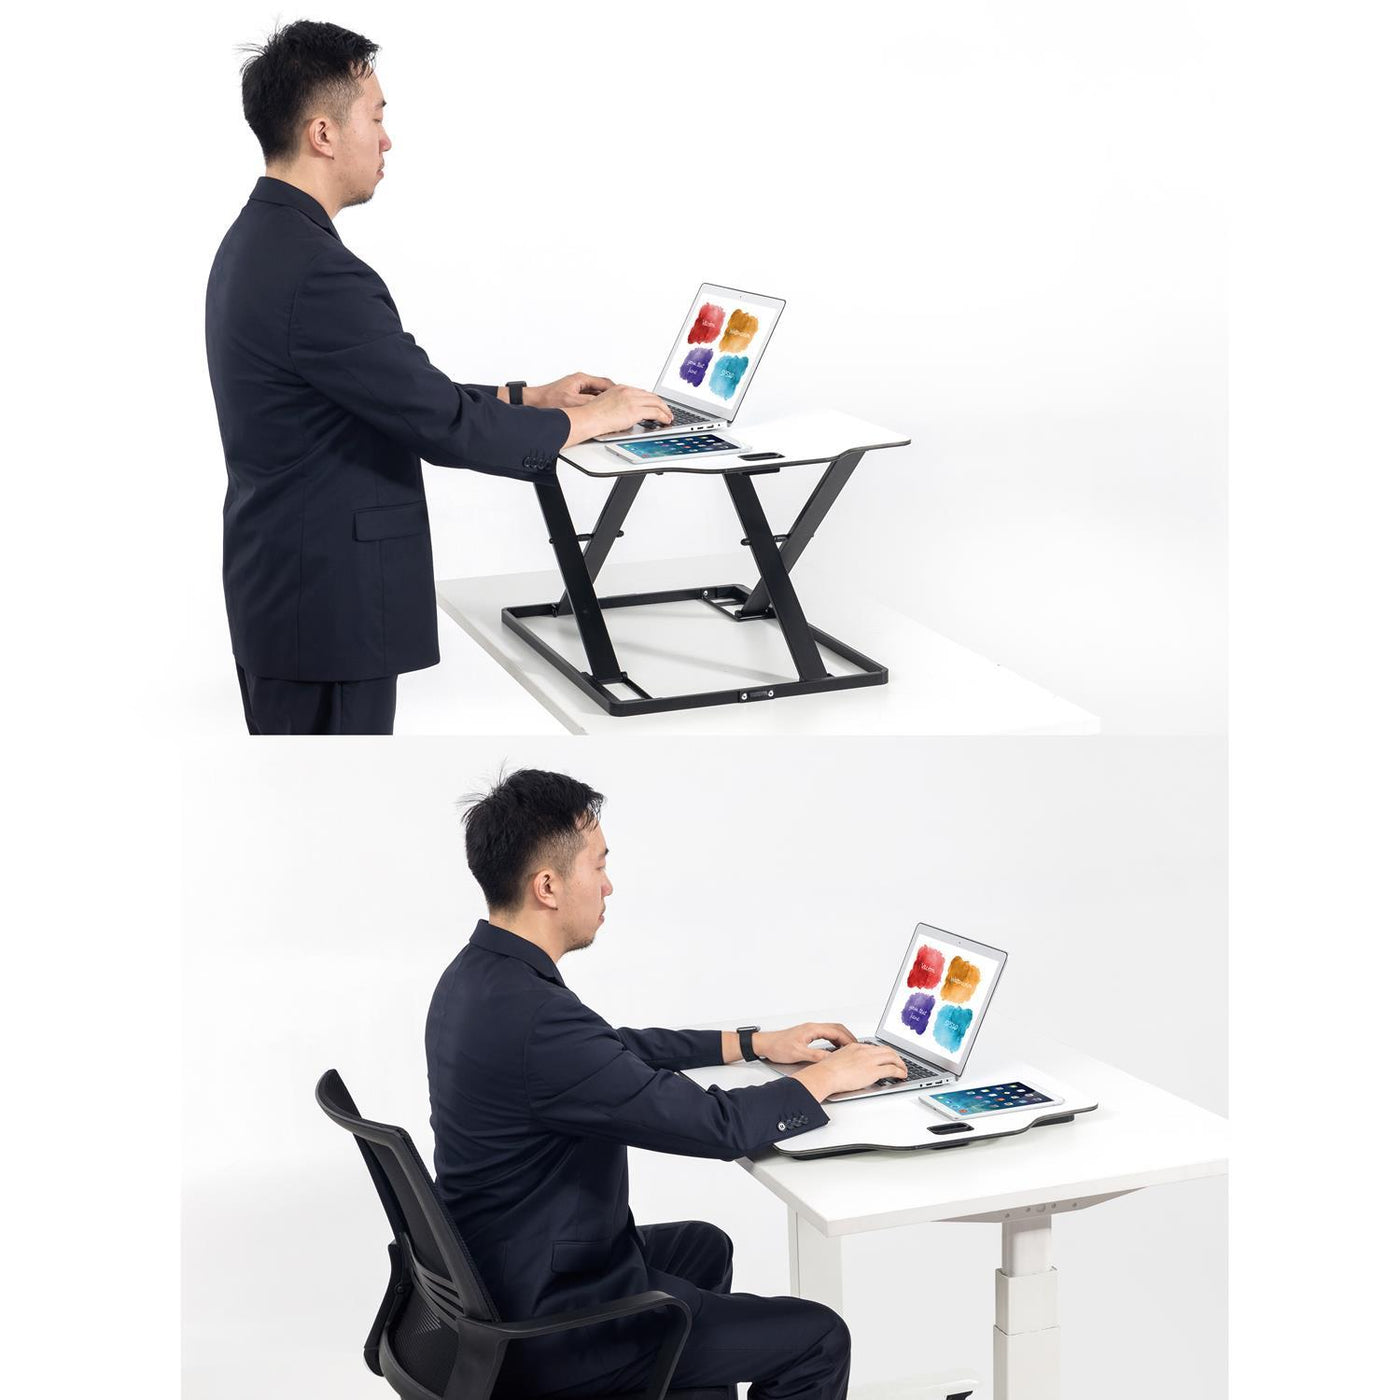 Ultracienki konwerter biurkowy podstawka do pracy na siedząco lub stojąco Ergo Office, biały, ze sprężyną gazową, max 10kg, ER-420